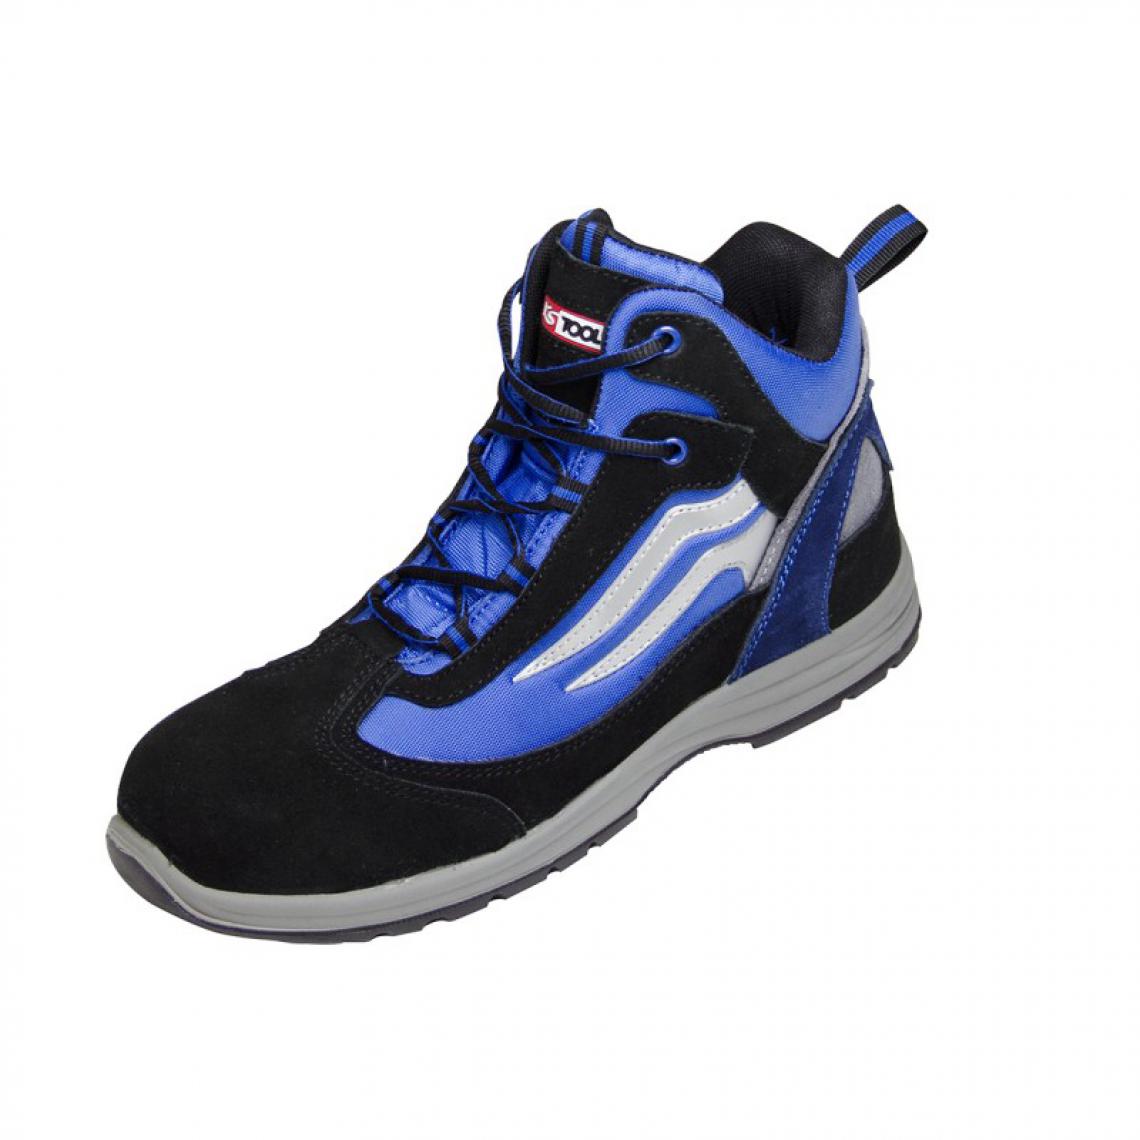 Kstools - Chaussures de sécurité montante KSTOOLS Couleur bleue et noire taille 41 - Equipement de Protection Individuelle